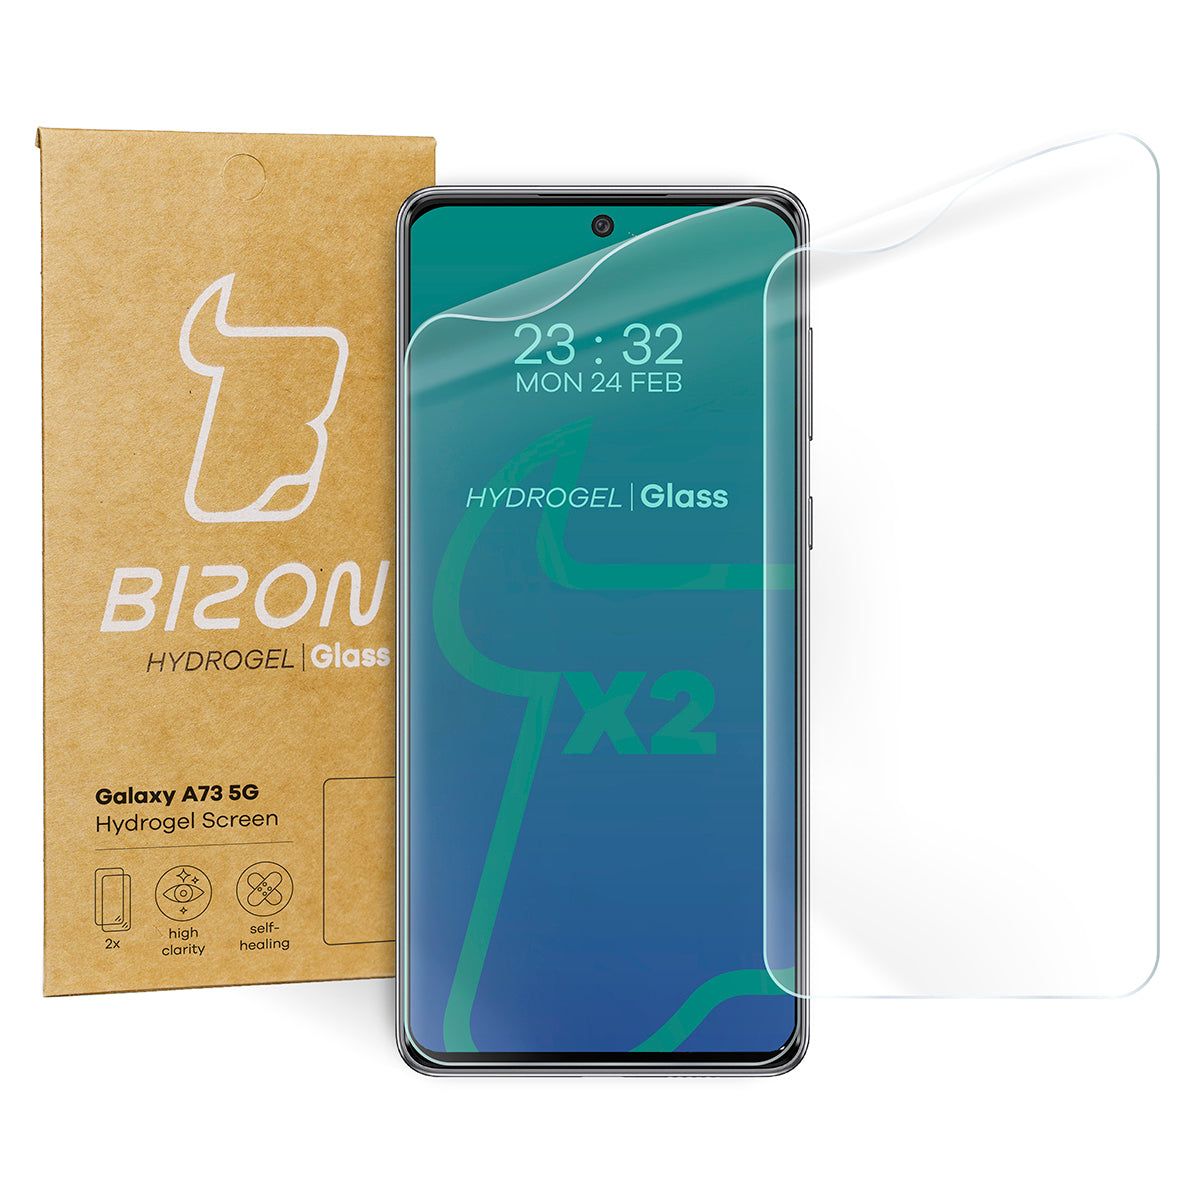 Hydrogel Folie für den Bildschirm Bizon Glass Hydrogel, Galaxy A73 5G, 2 Stück